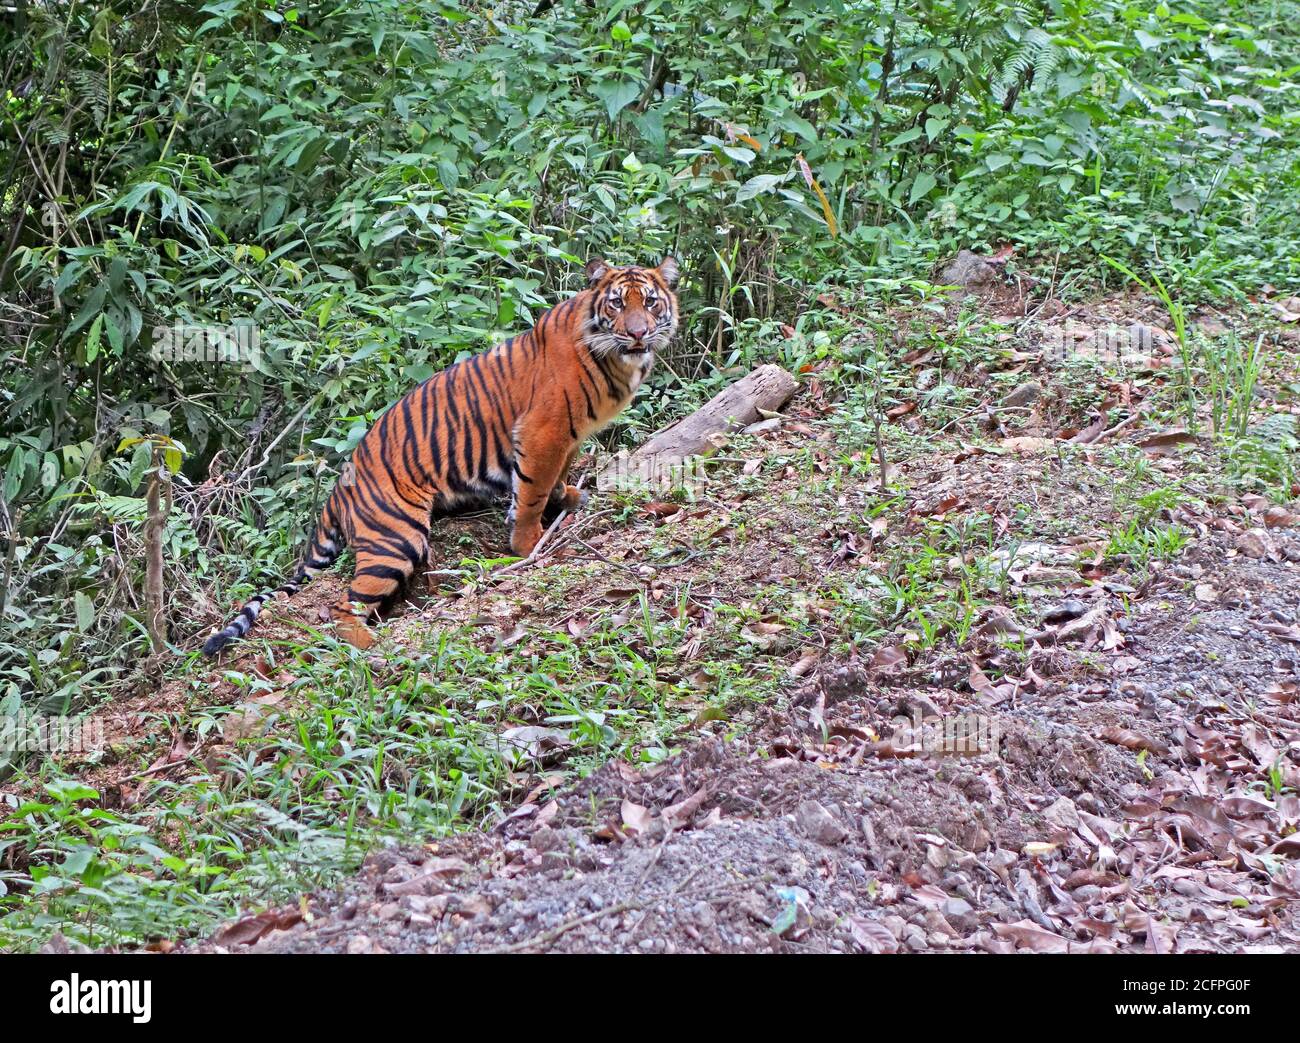 Javanische Tiger (Panthera tigris sondaica), eine vom Aussterben bedrohte Unterart, Indonesien, Sumatra Stockfoto